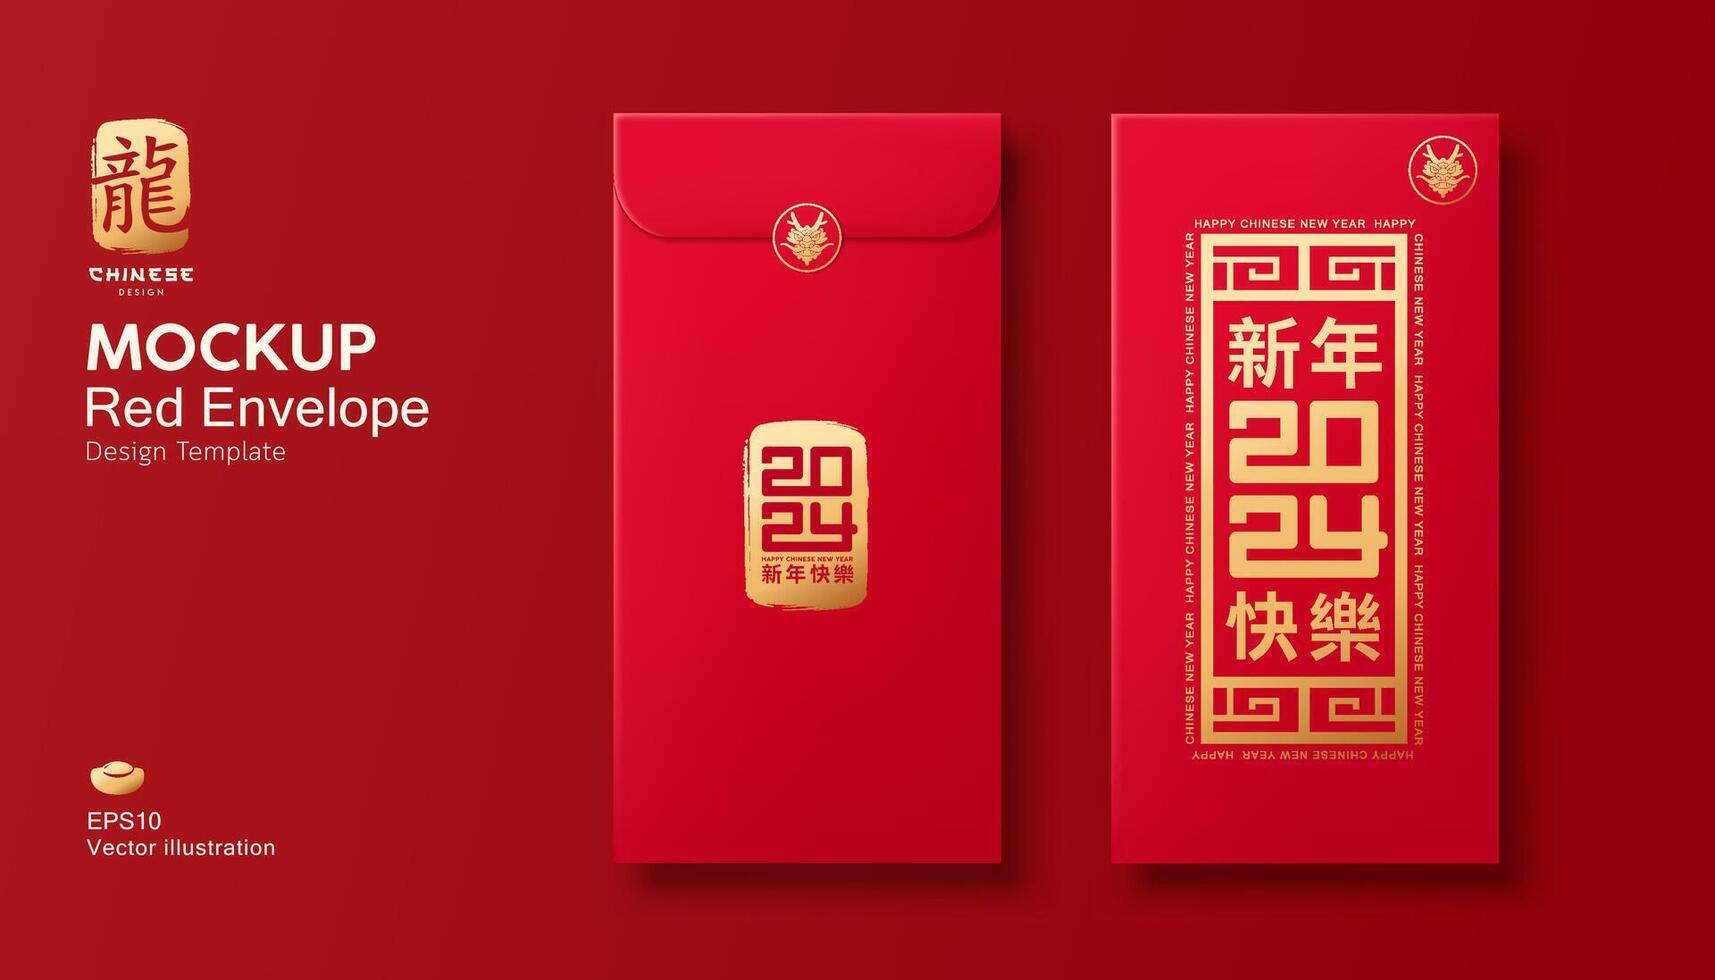 vermelho envelope zombar acima, ang pao chinês Novo ano 2024 Projeto em vermelho fundo, personagens tradução feliz Novo ano, eps10 vetor ilustração.